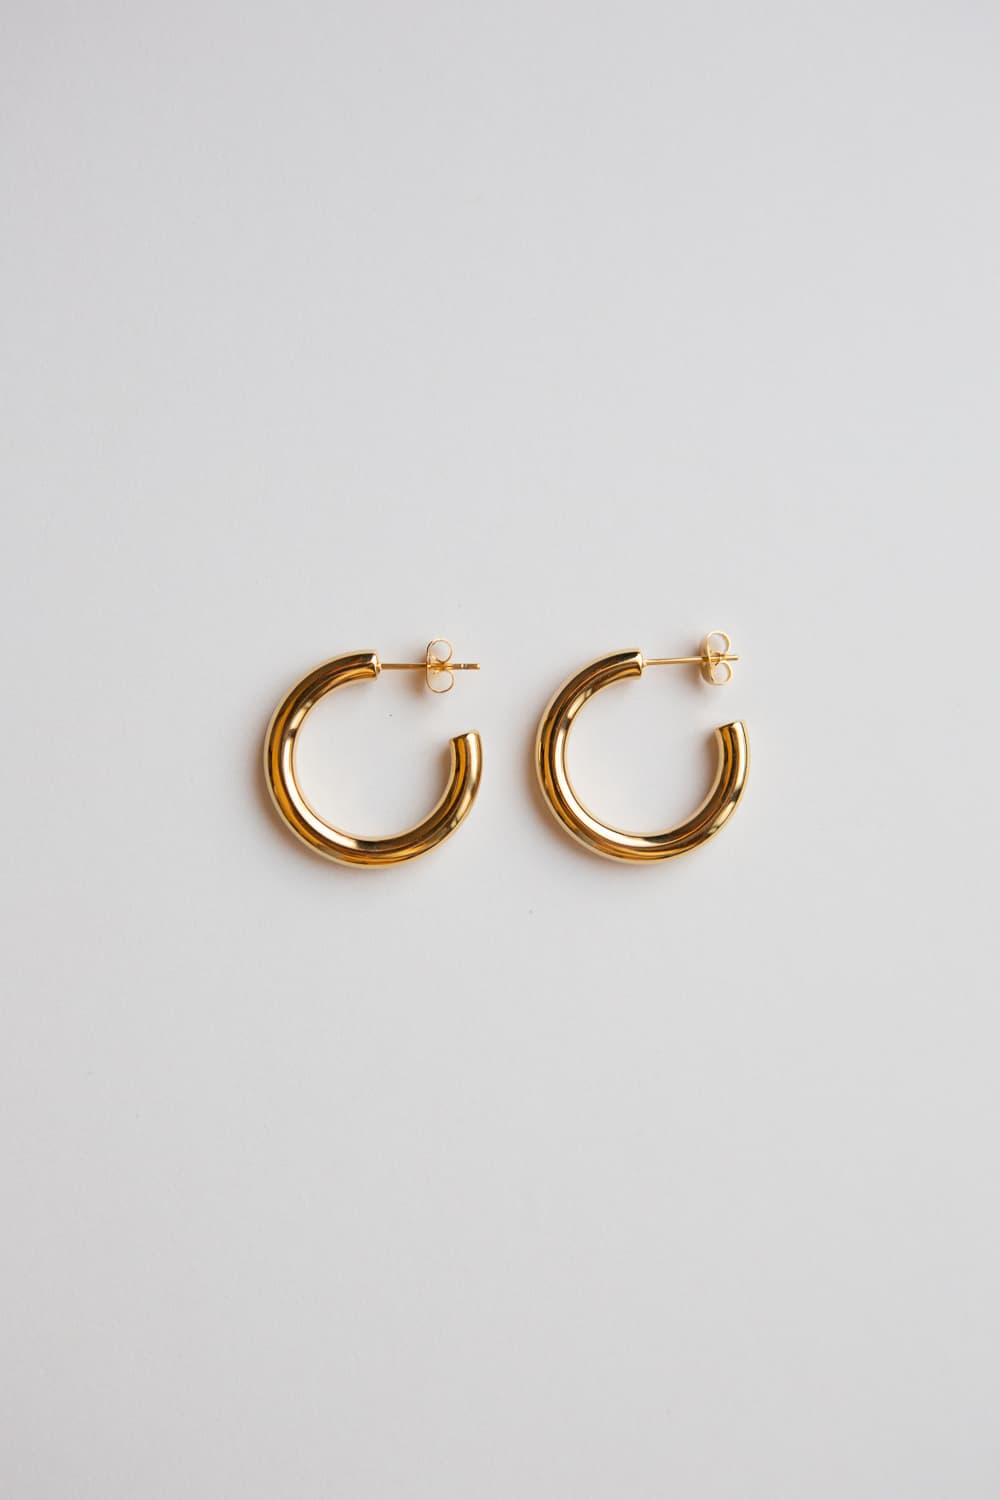 Gold Medium Thick Hoop Earrings - Wynter Bloom